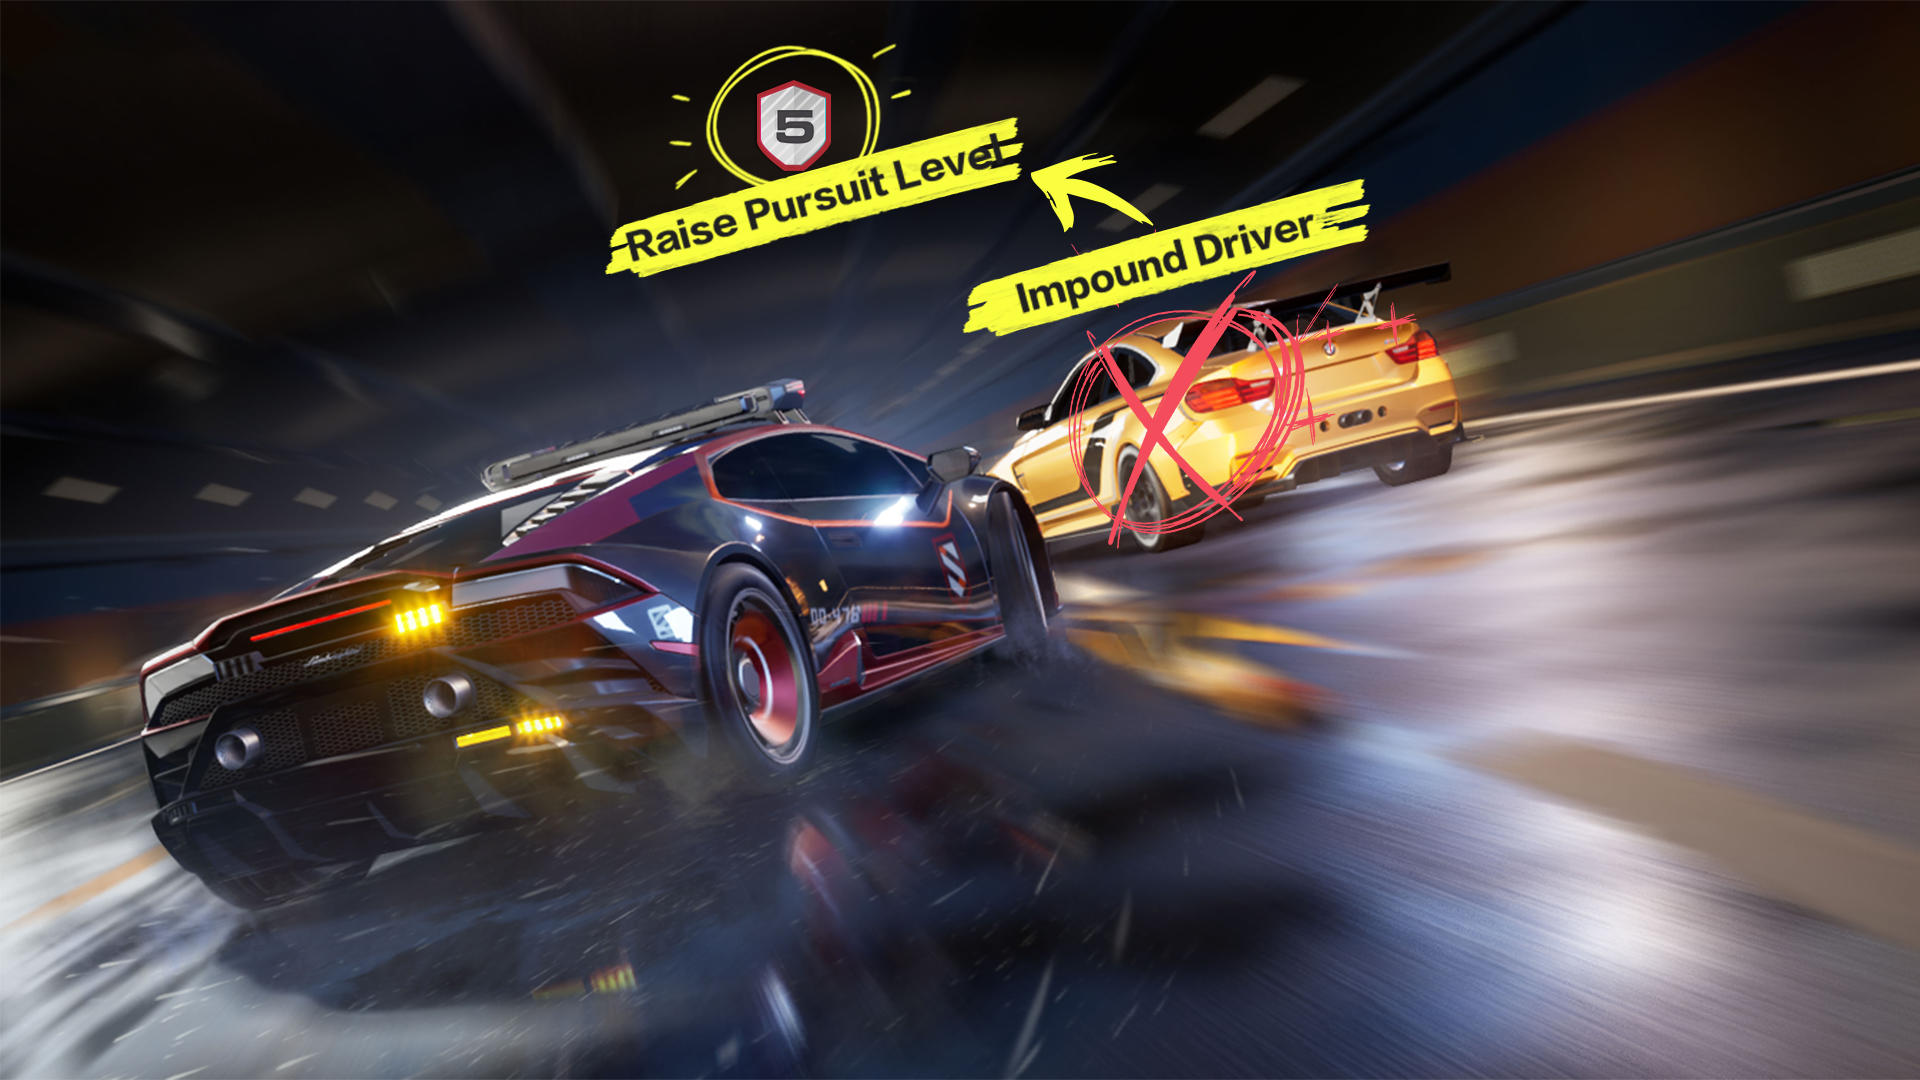 Descarga la aplicación para móviles Need for Speed™ Heat Studio